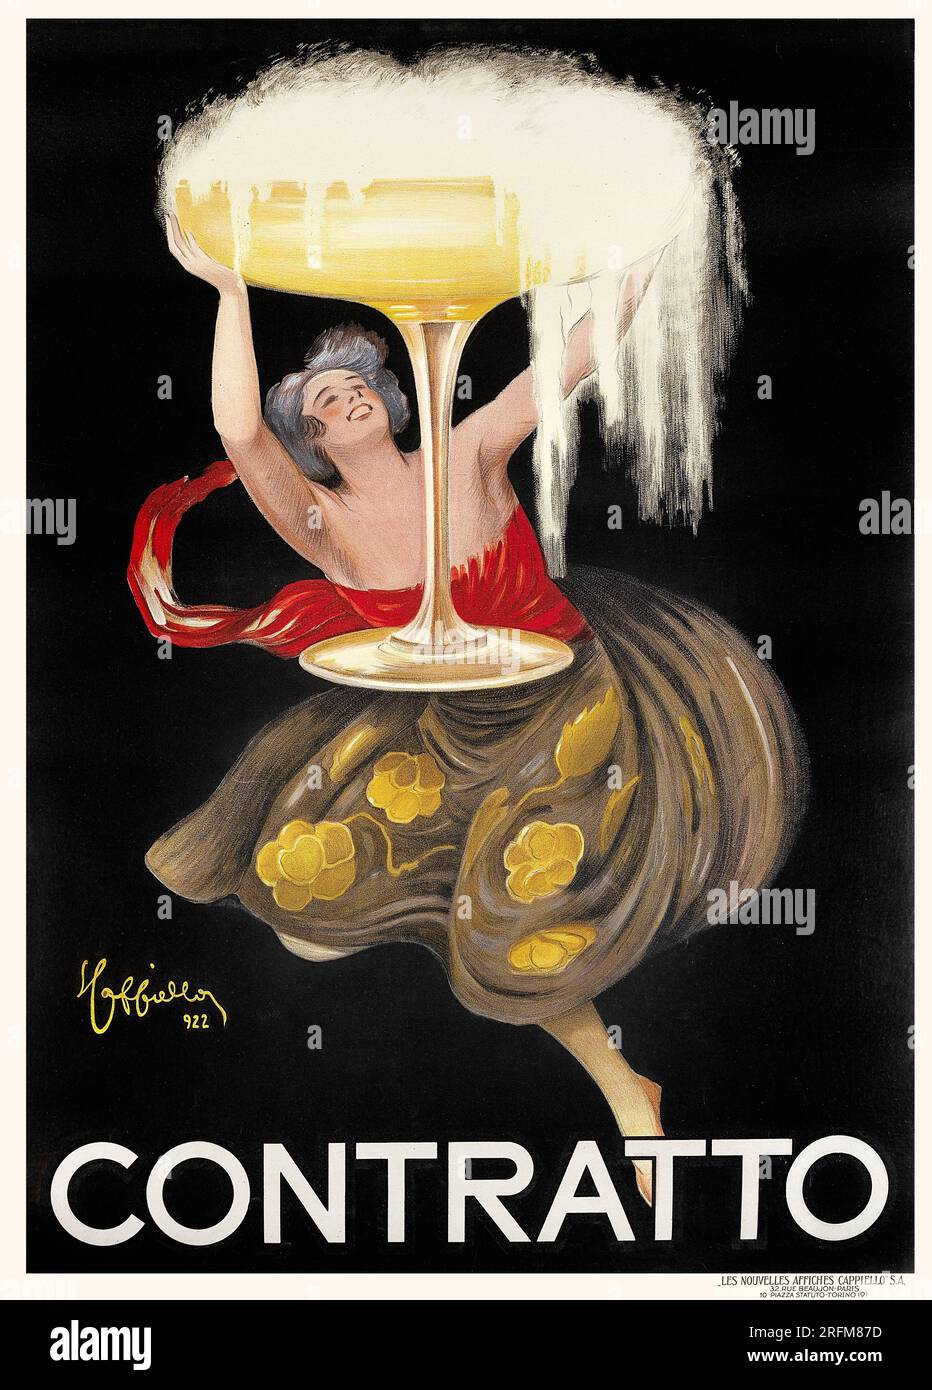 CONTRATTO - Vintage advertisement poster by Leonetto Cappiello Stock Photo